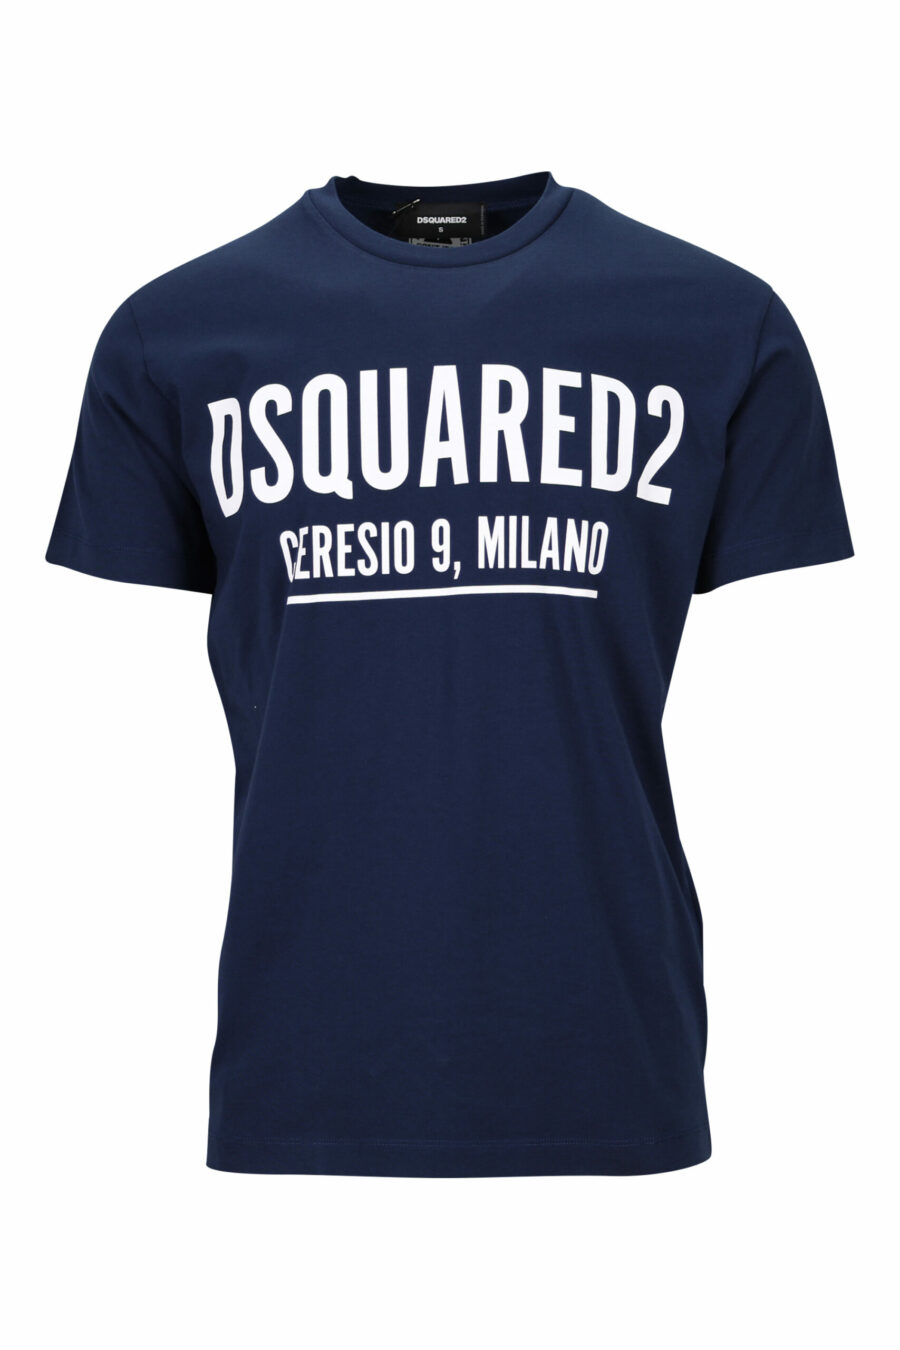 Camiseta azul oscuro con maxilogo "ceresio 9, milano" - 8054148504915 scaled